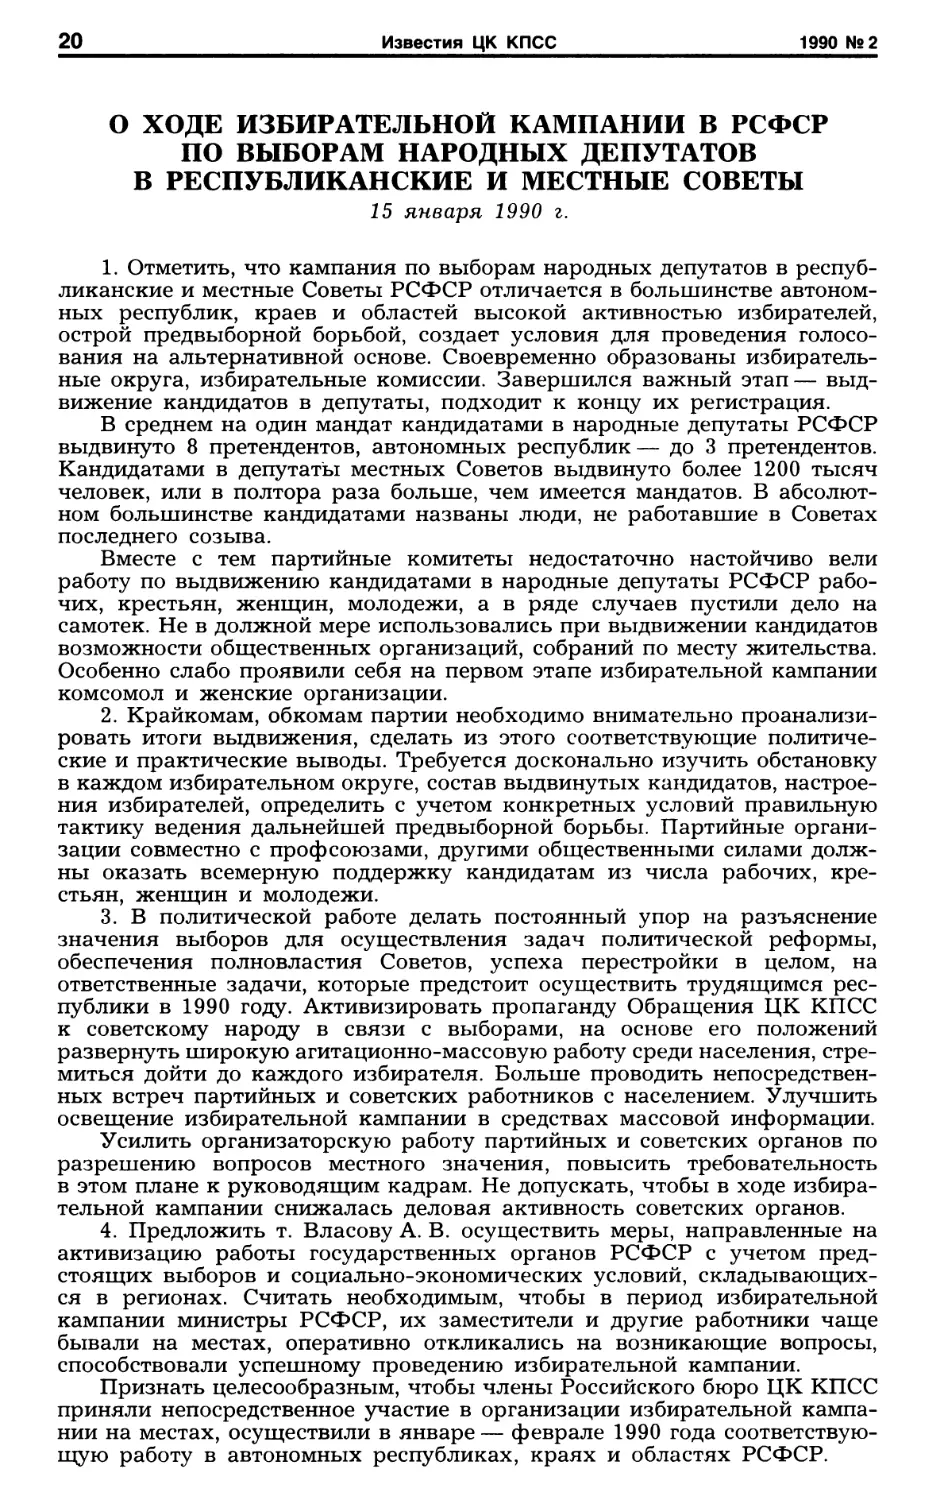 О ходе избирательной кампании в РСФСР по выборам народных депутатов в республиканские и местные Советы. 15 января 1990 г